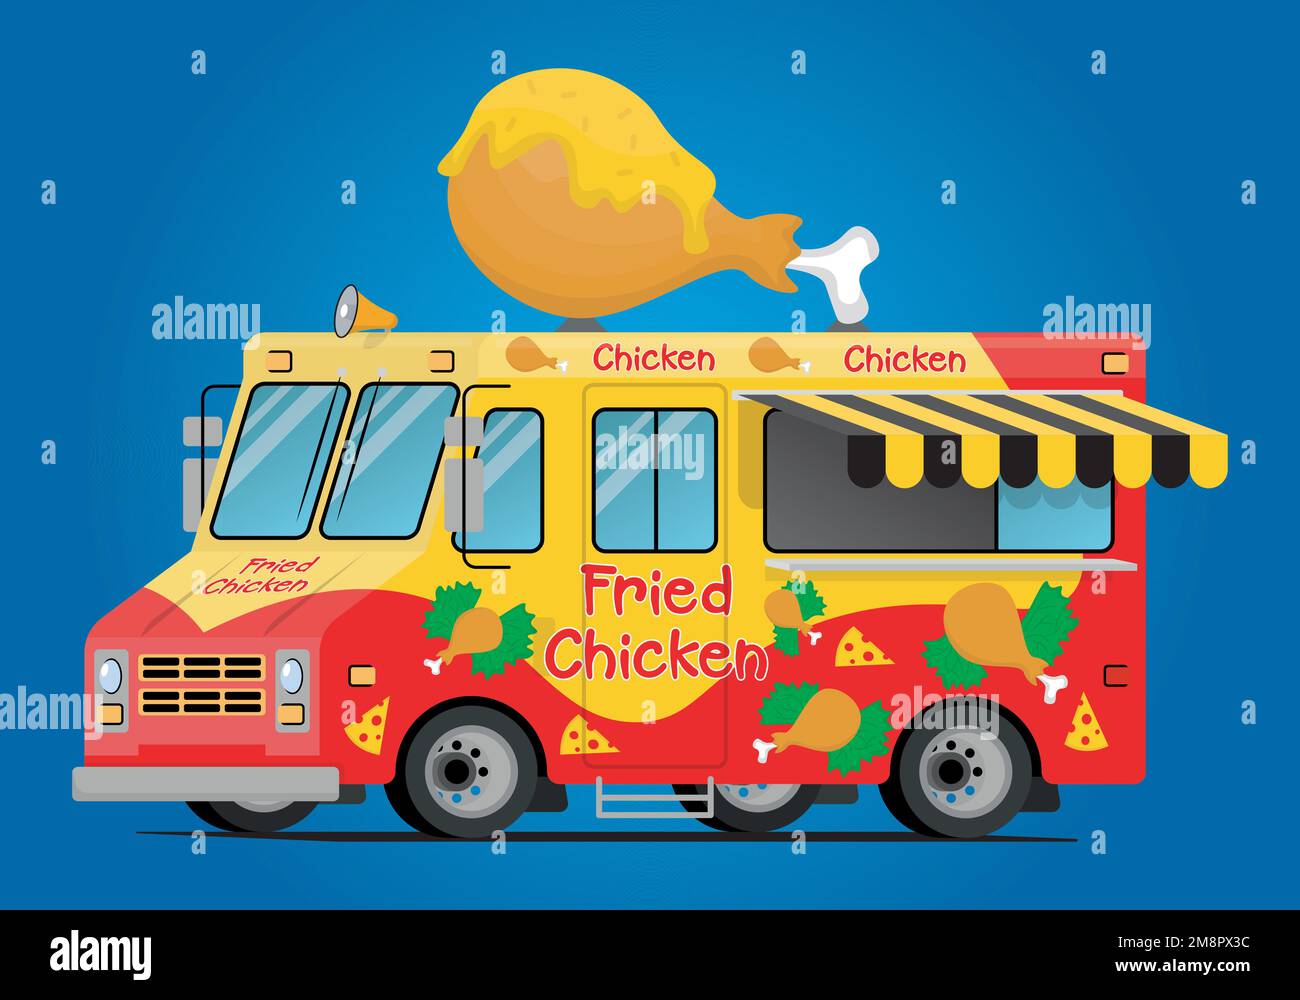 chariot alimentaire avec poulet frit et sauce au fromage Illustration de Vecteur